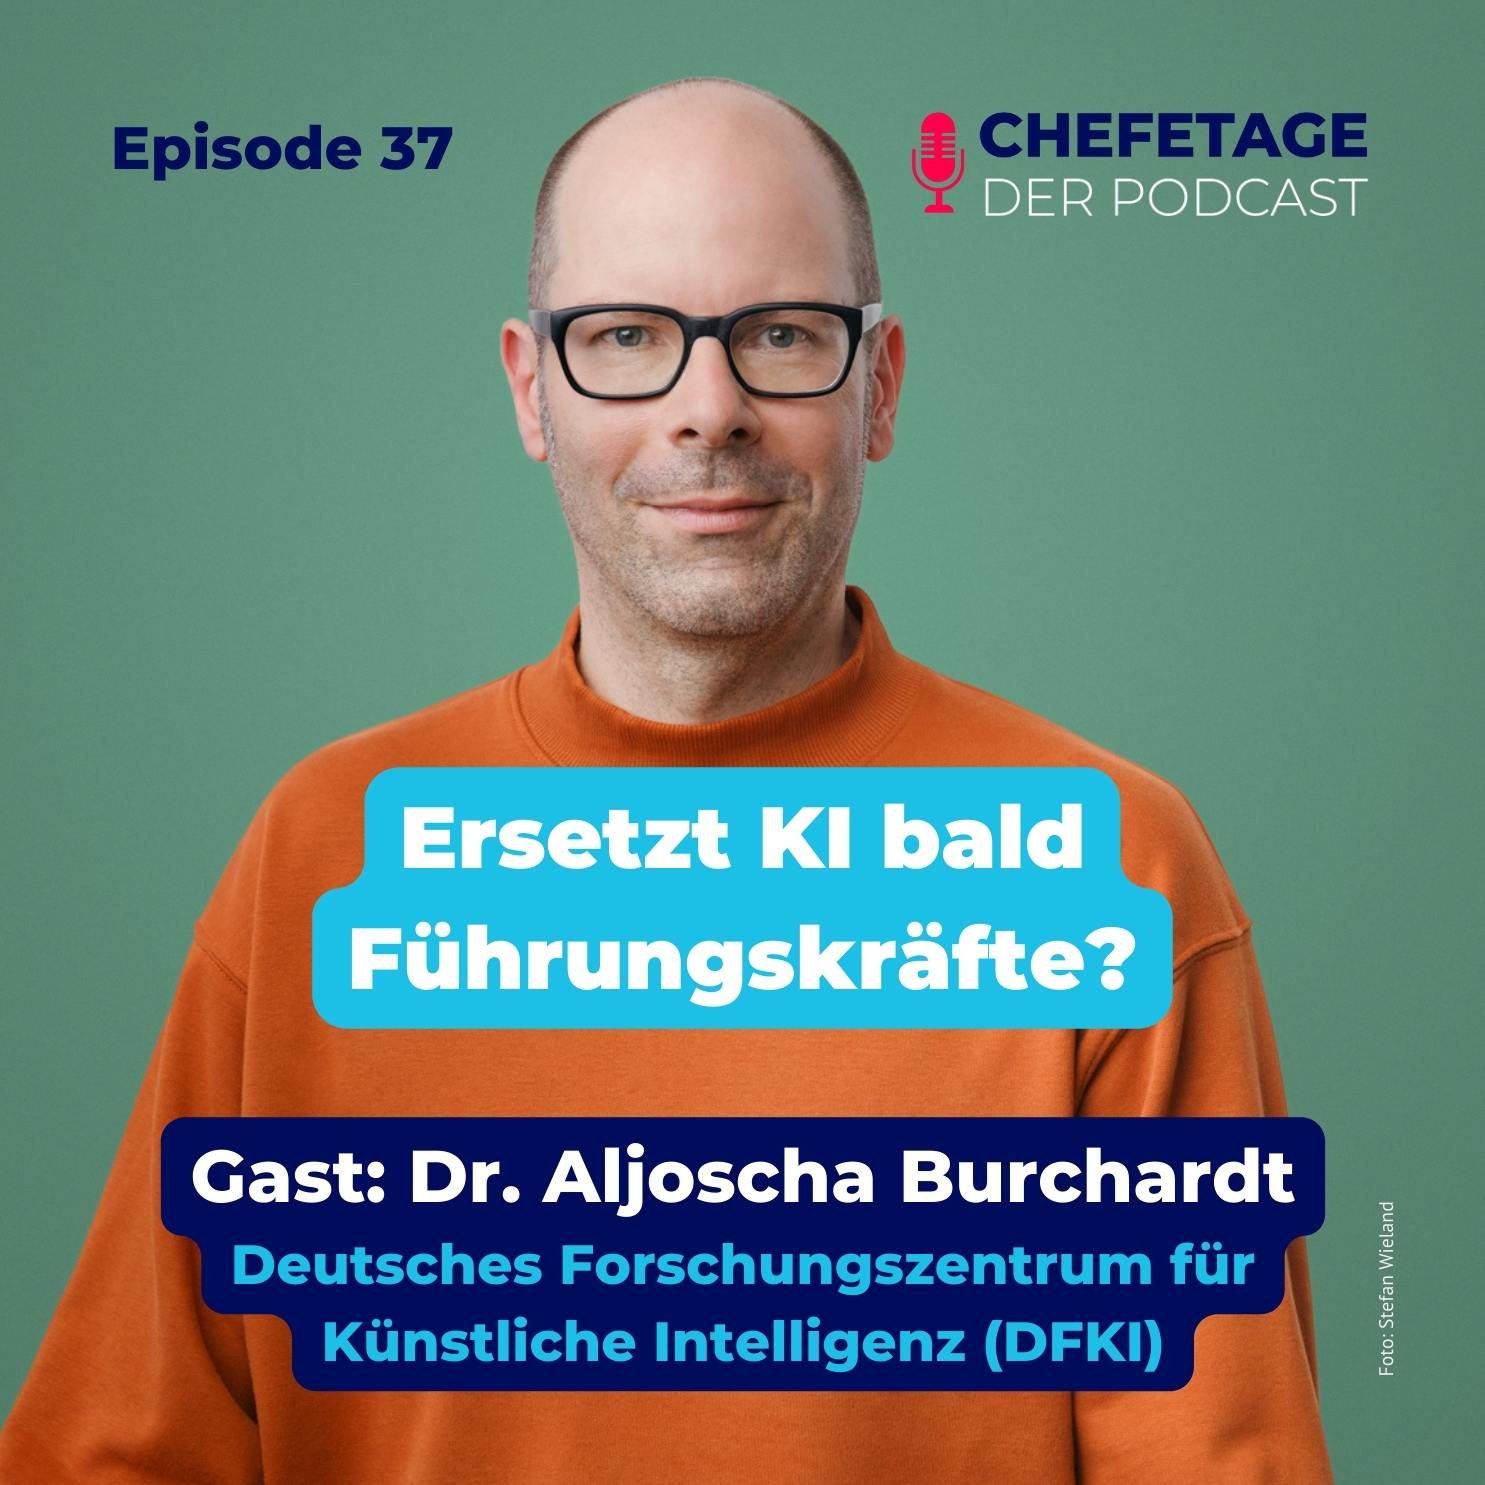 #37 - Leadership und Künstliche Intelligenz - Dr. Aljoscha Burchardt, DFKI (Deutsches Forschungszentrum für KI)